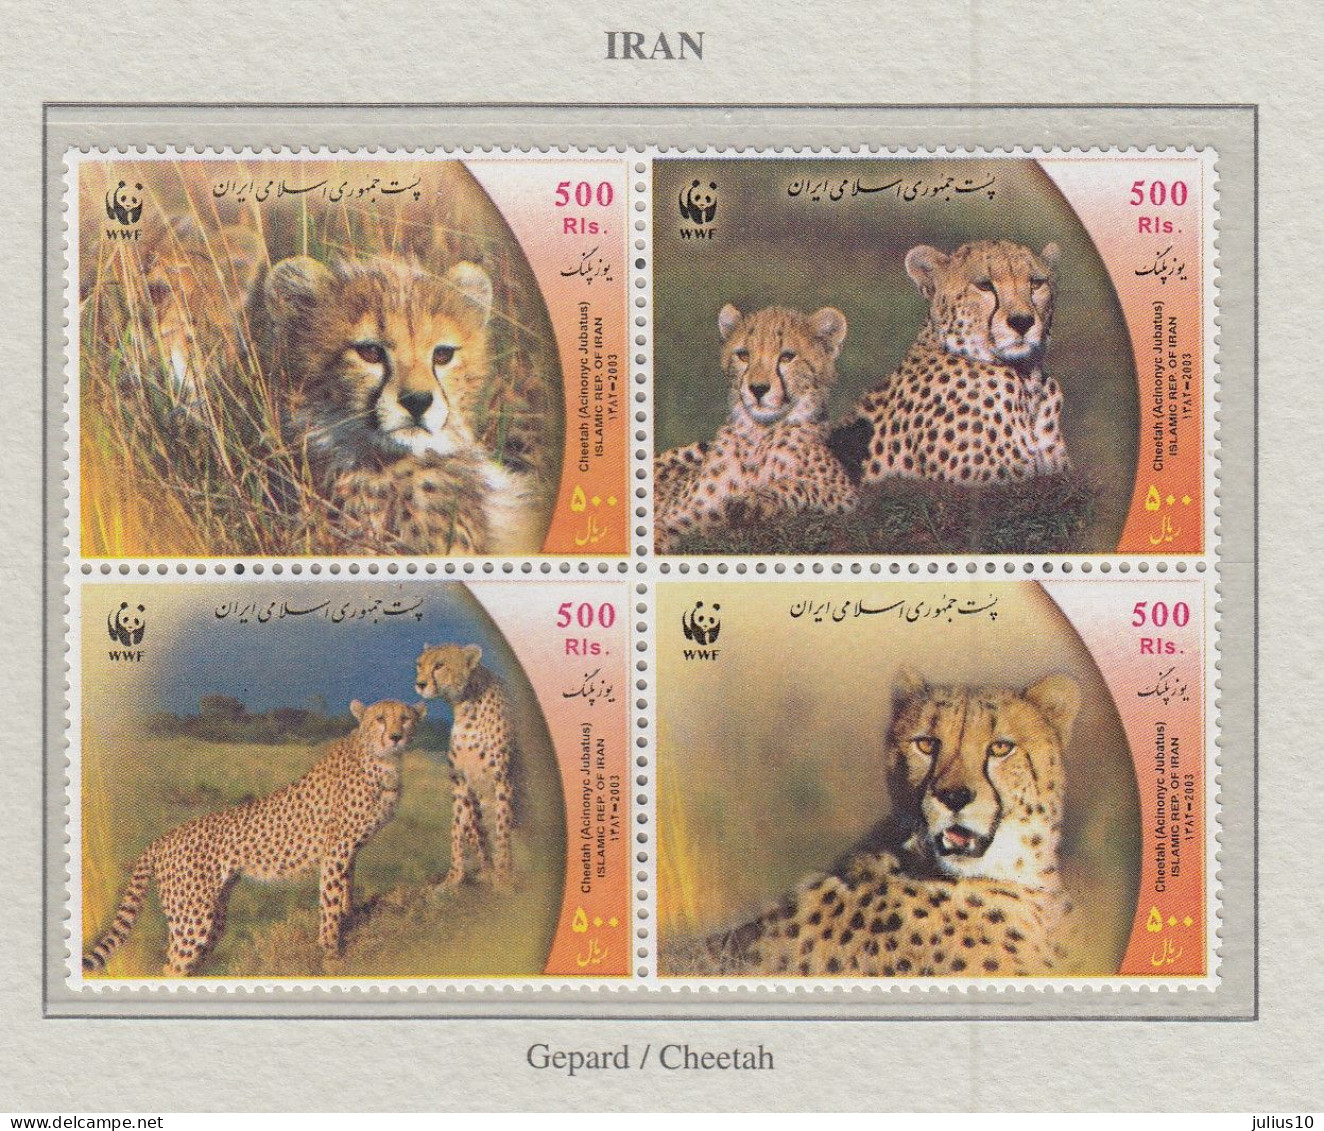 IRAN 2003 WWF Wild Cats Mi 2932-2935 MNH Fauna 676 - Felini